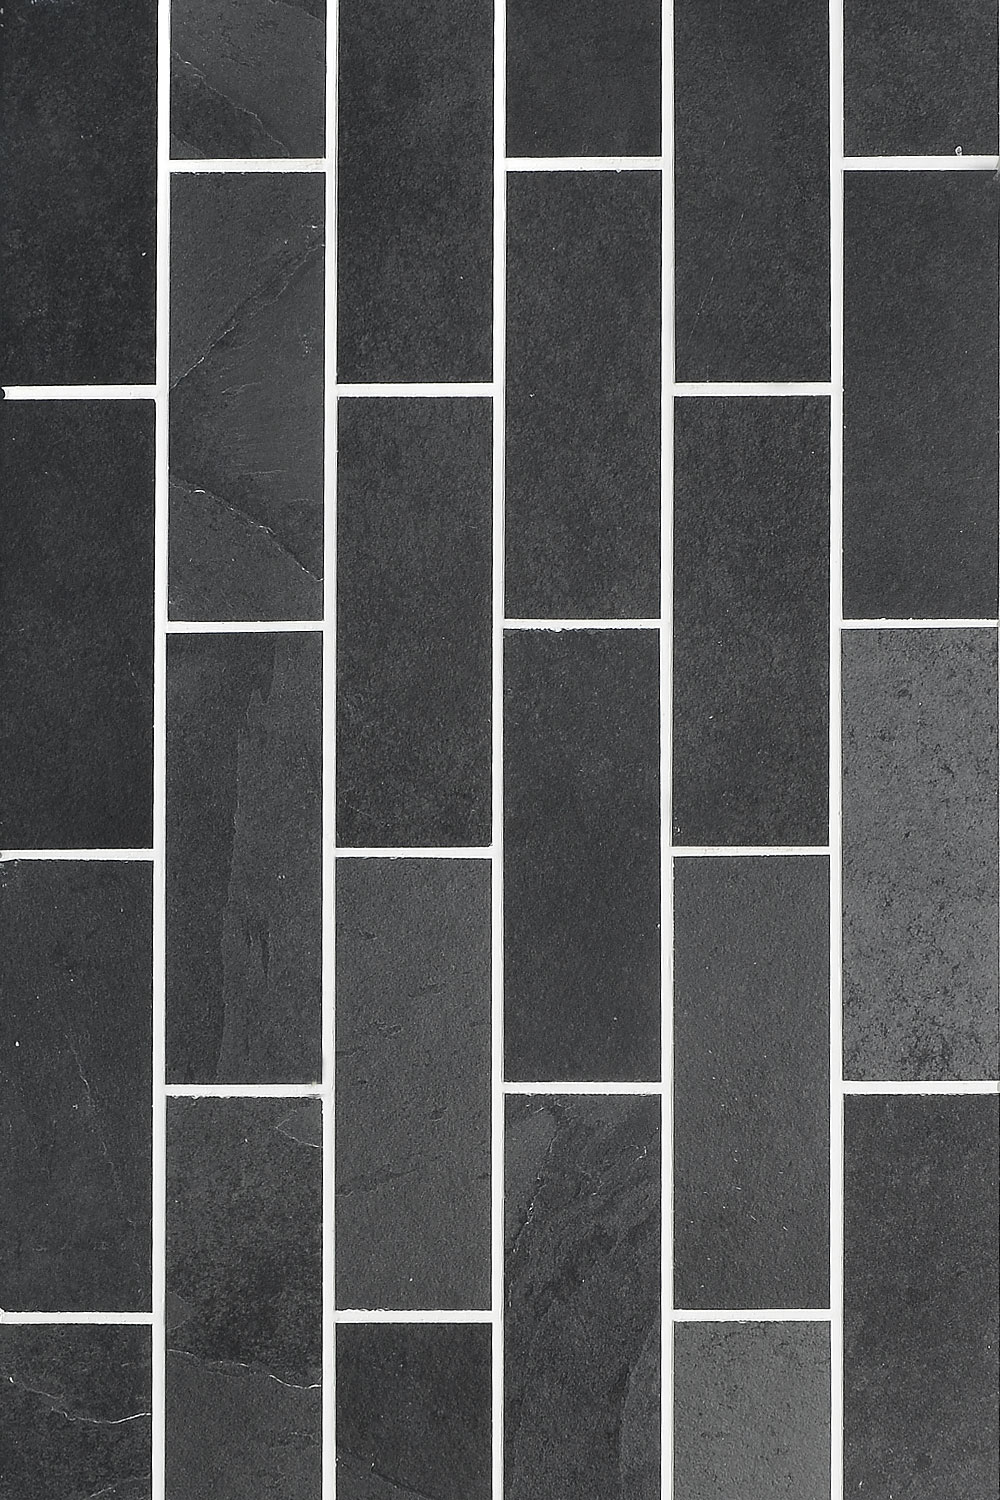 Black Gray Slate Subway Backsplash Tile BA1070 6